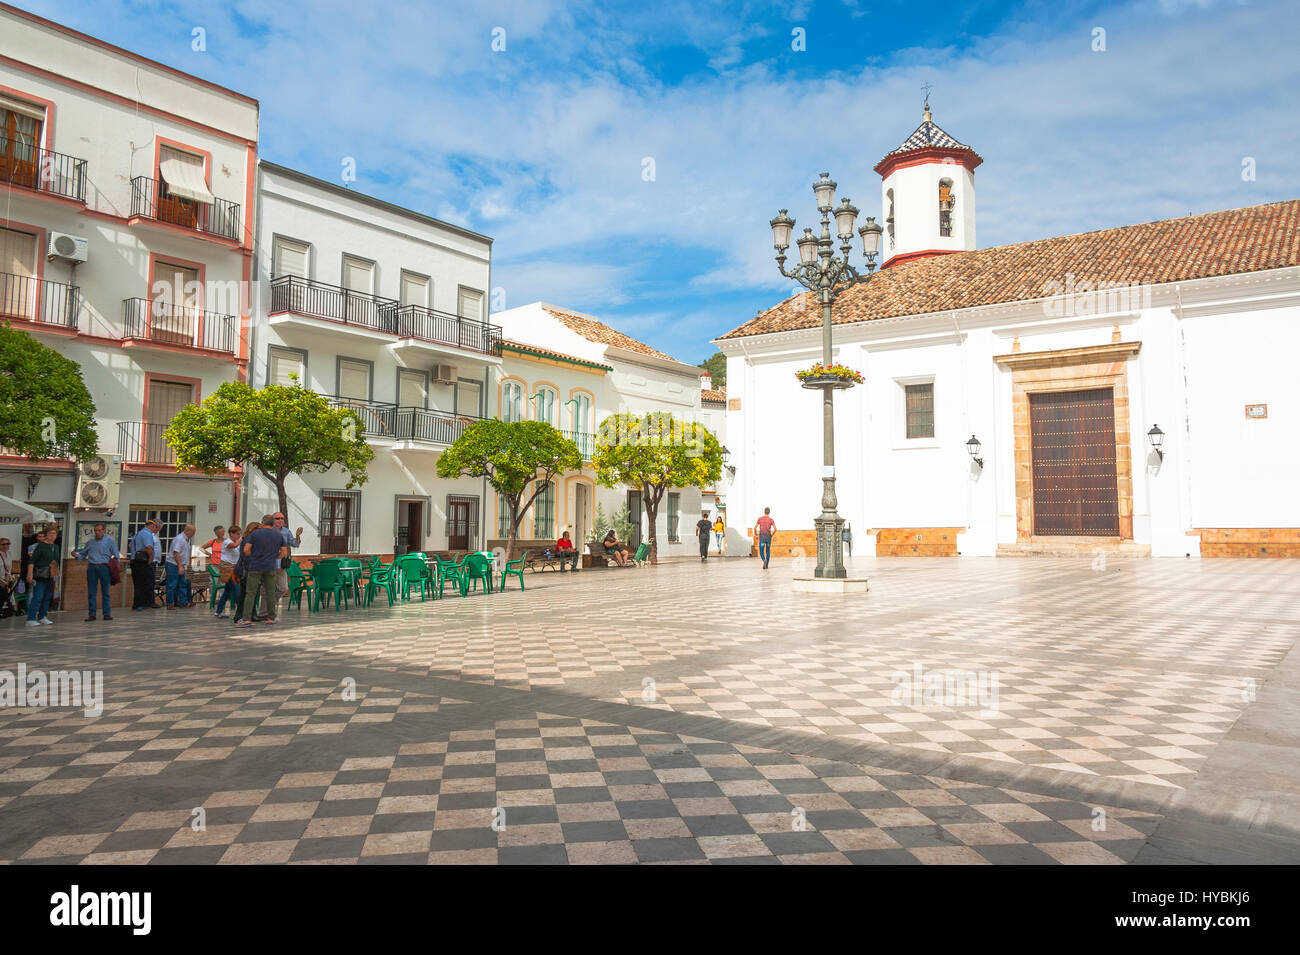 Plaza General Franco en Ubrique, provincia de Cádiz, el más grande ...